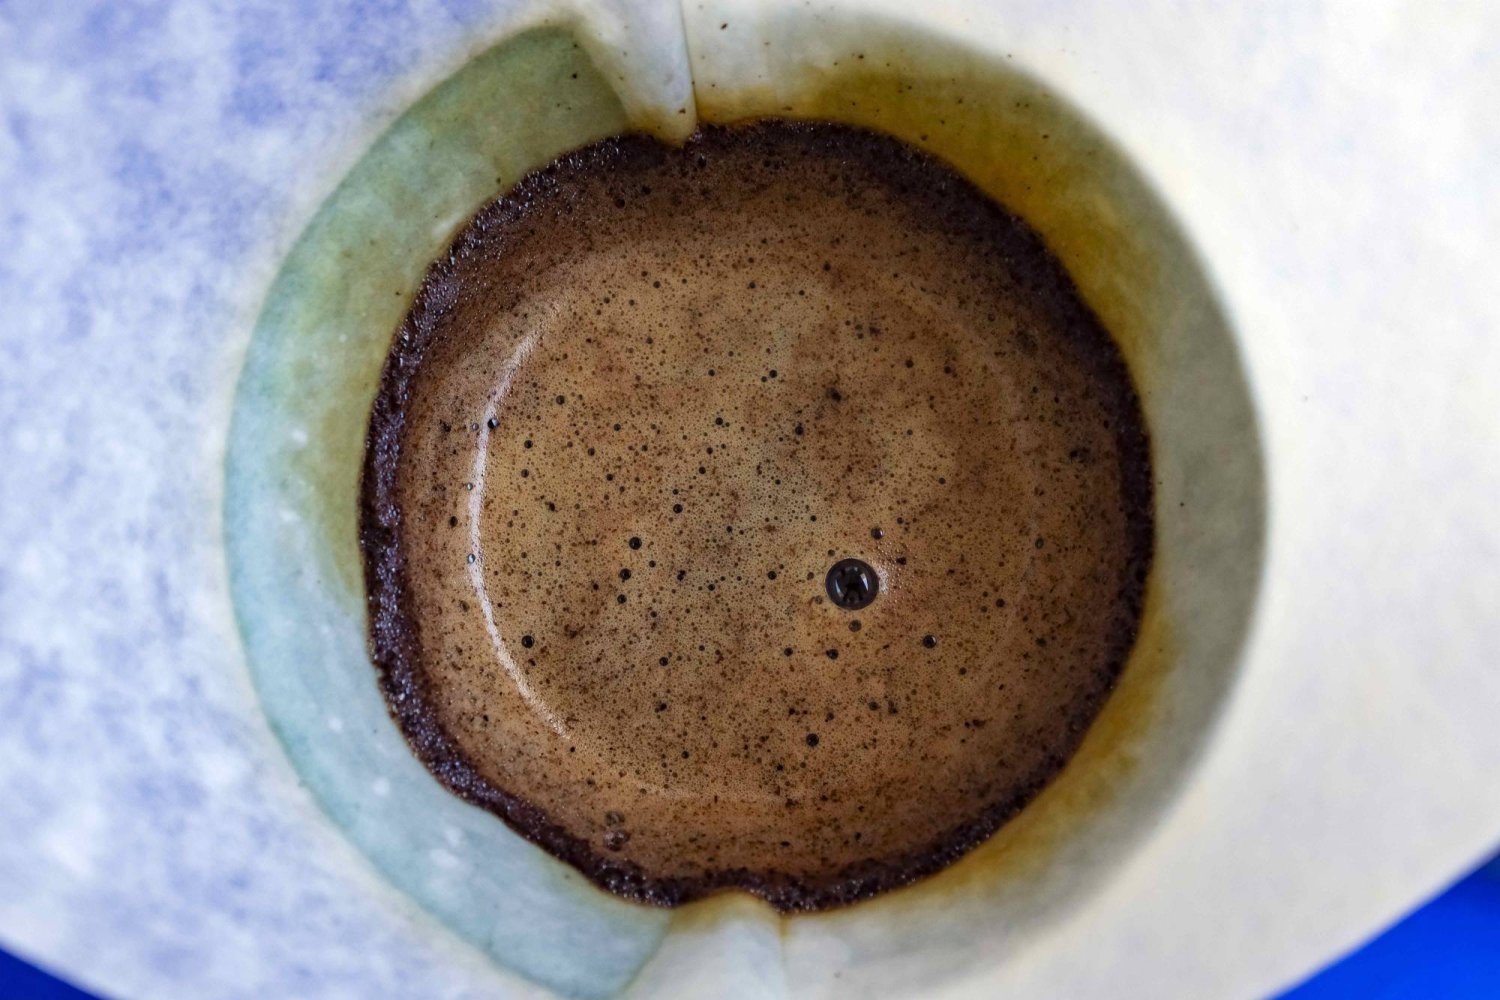 كيف تؤثر القهوة على معدتك وجهازك الهضمي؟